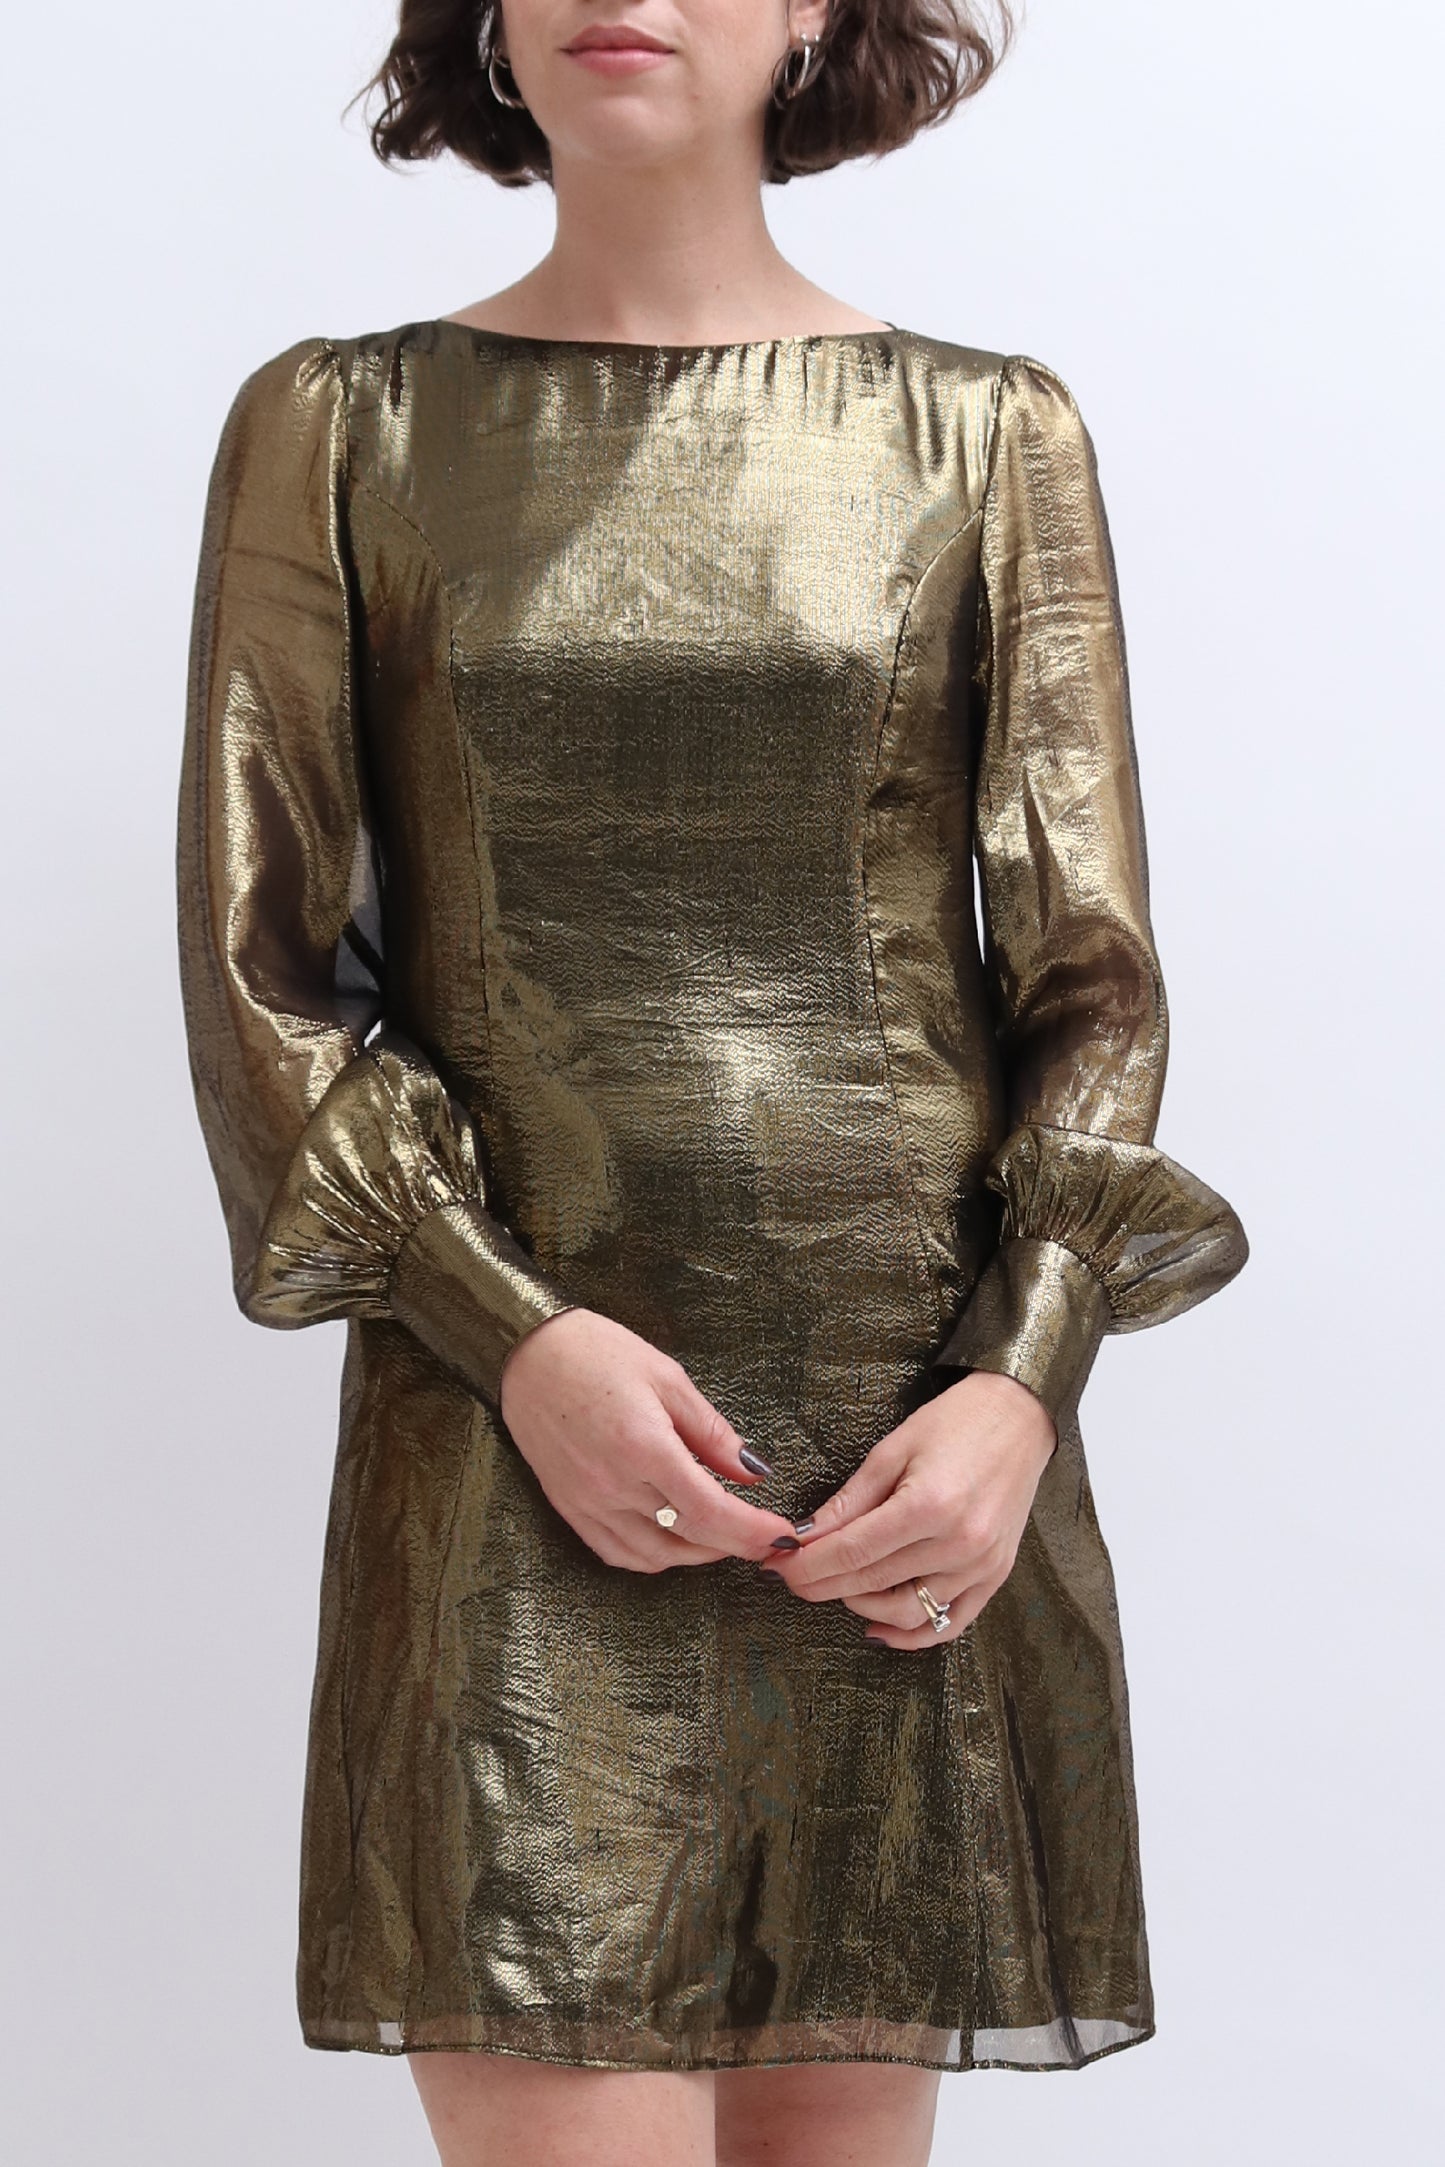 RENT: TIBI GOLD METALLIC MINI DRESS — from £35.25 per week